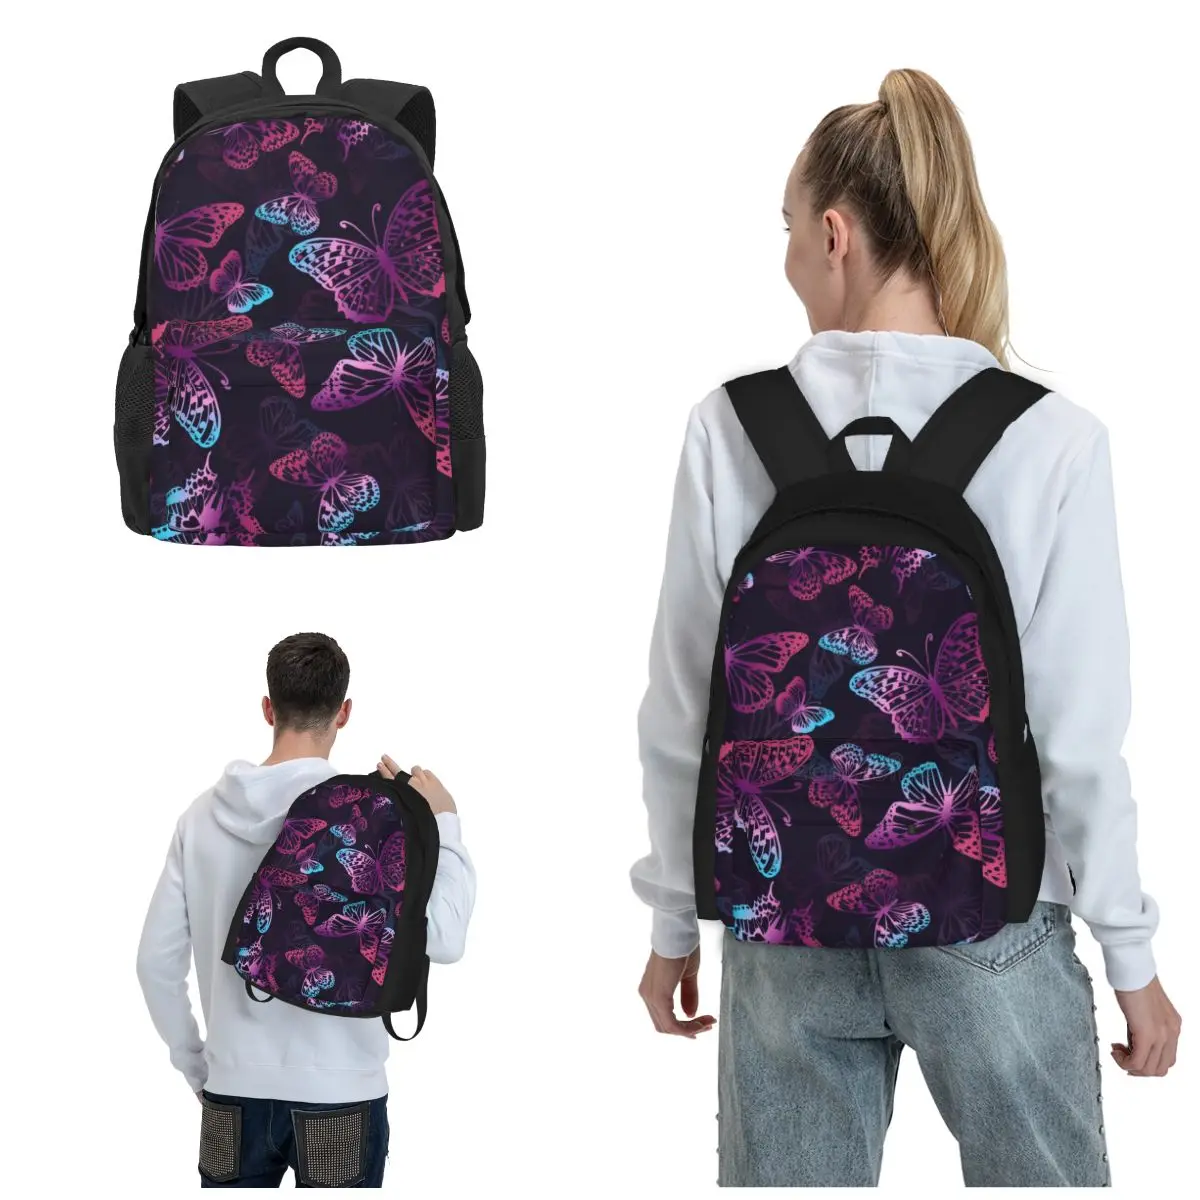 

Неоновые рюкзаки с бабочками для подростков, большая сумка для книг, легкие и легко стильные рюкзаки, отвечающие вашим динамичным образ жизни